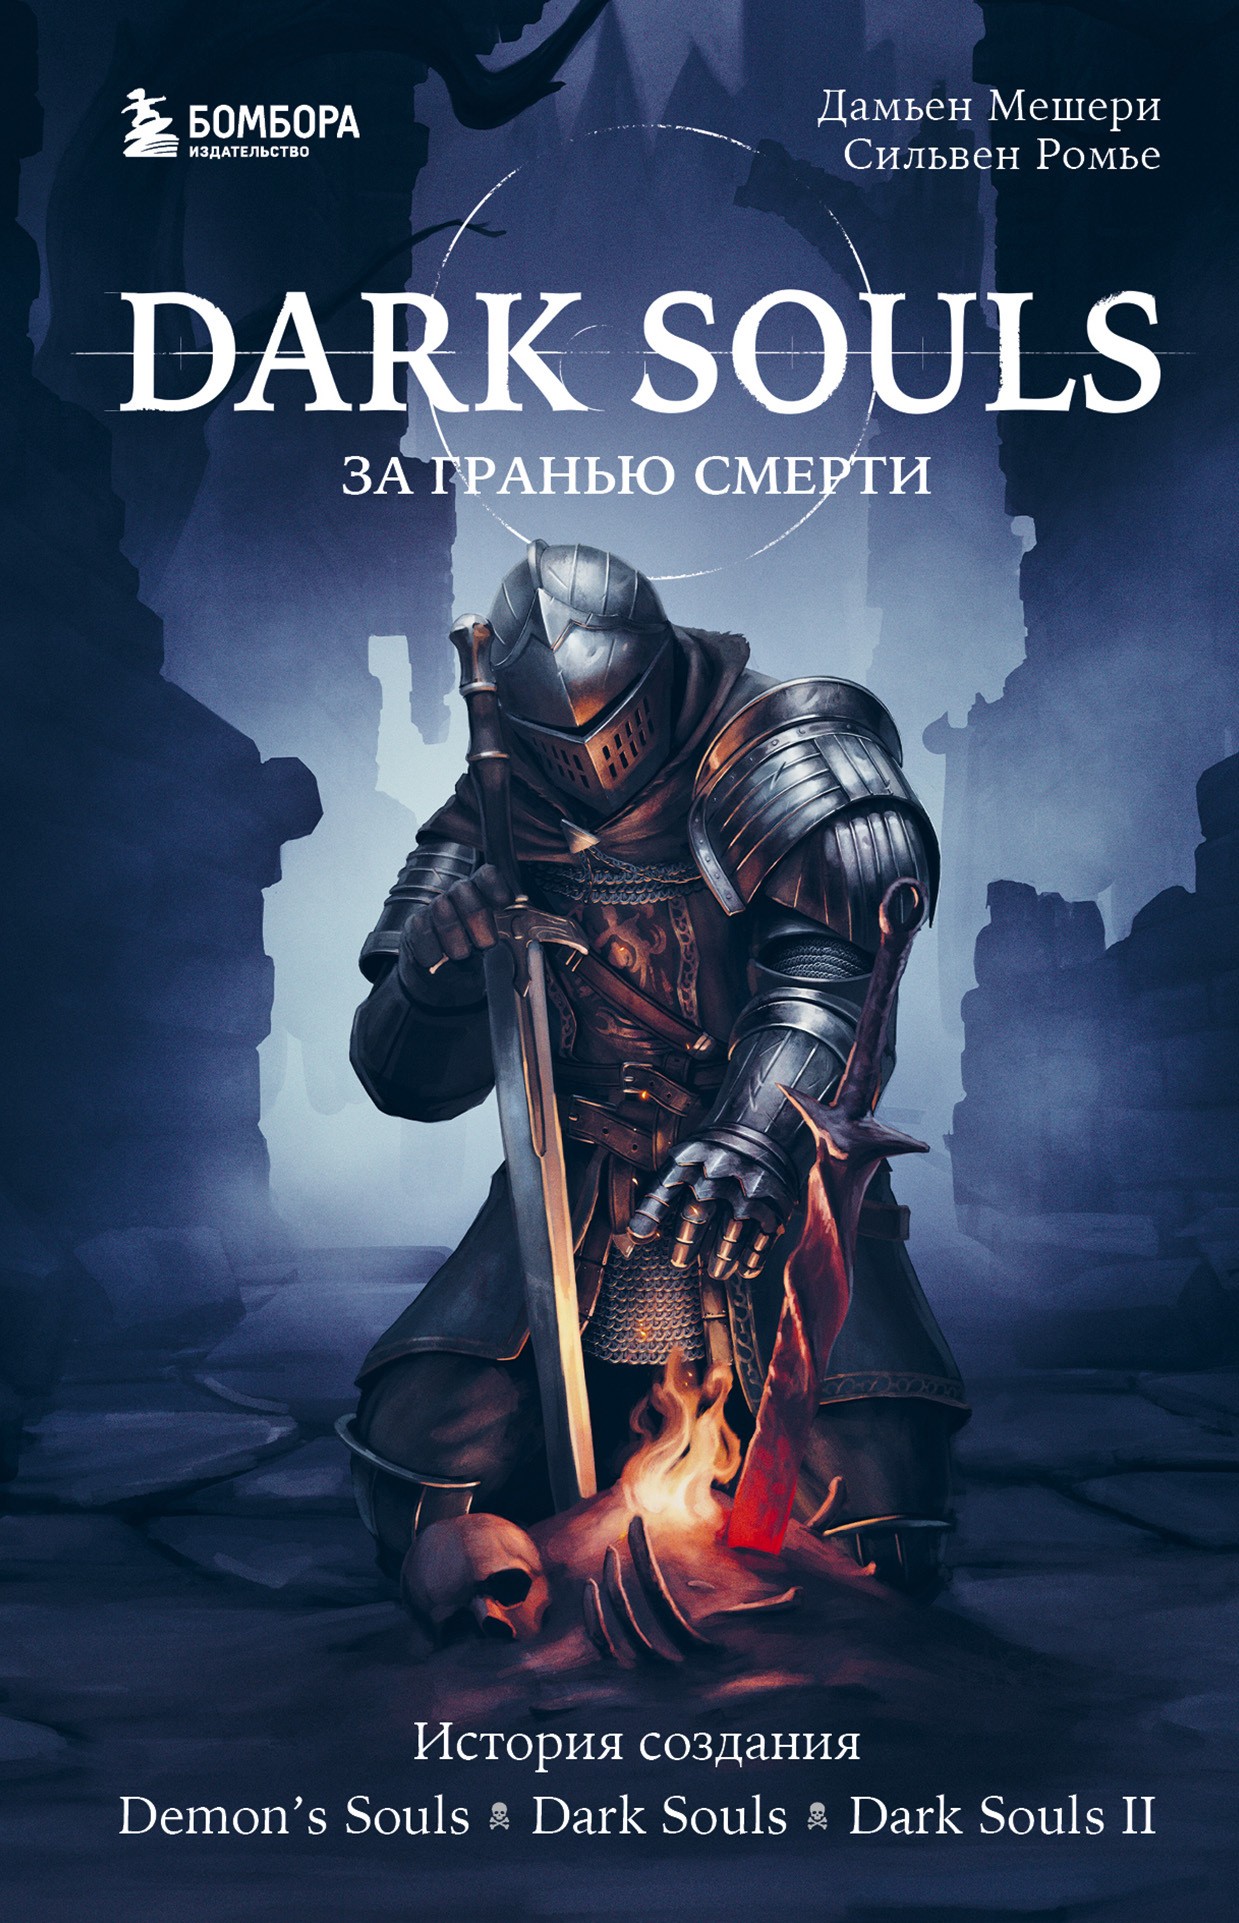 Мешери Dark Souls: за гранью смерти. Книга 1. История создания Demons Souls, Dark Souls, Dark Souls II 